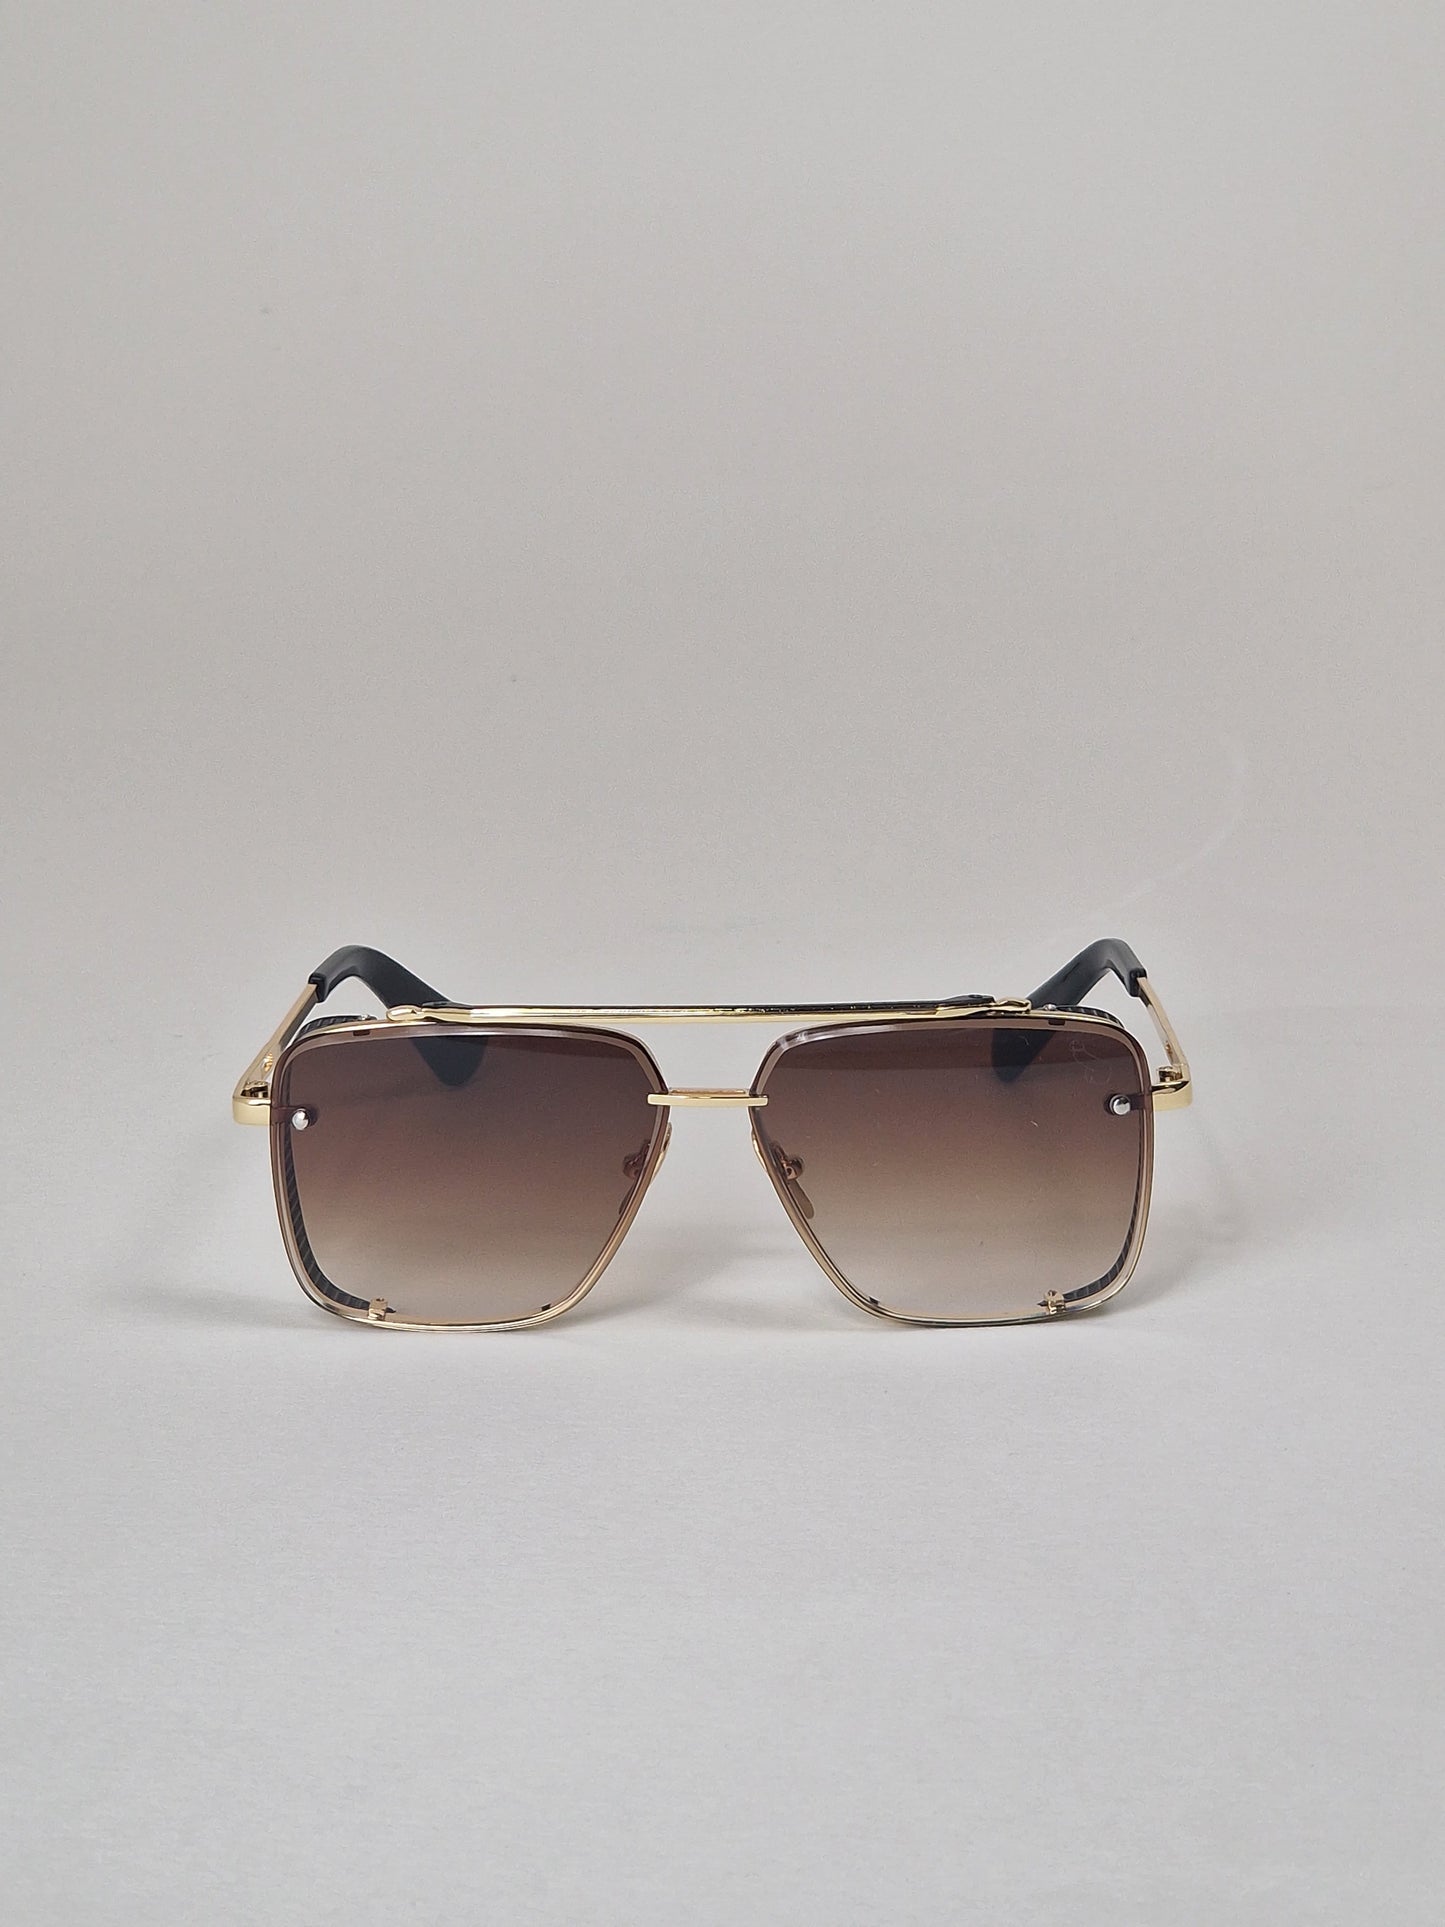 Solglasögon, modell 32 - Bruntintade.